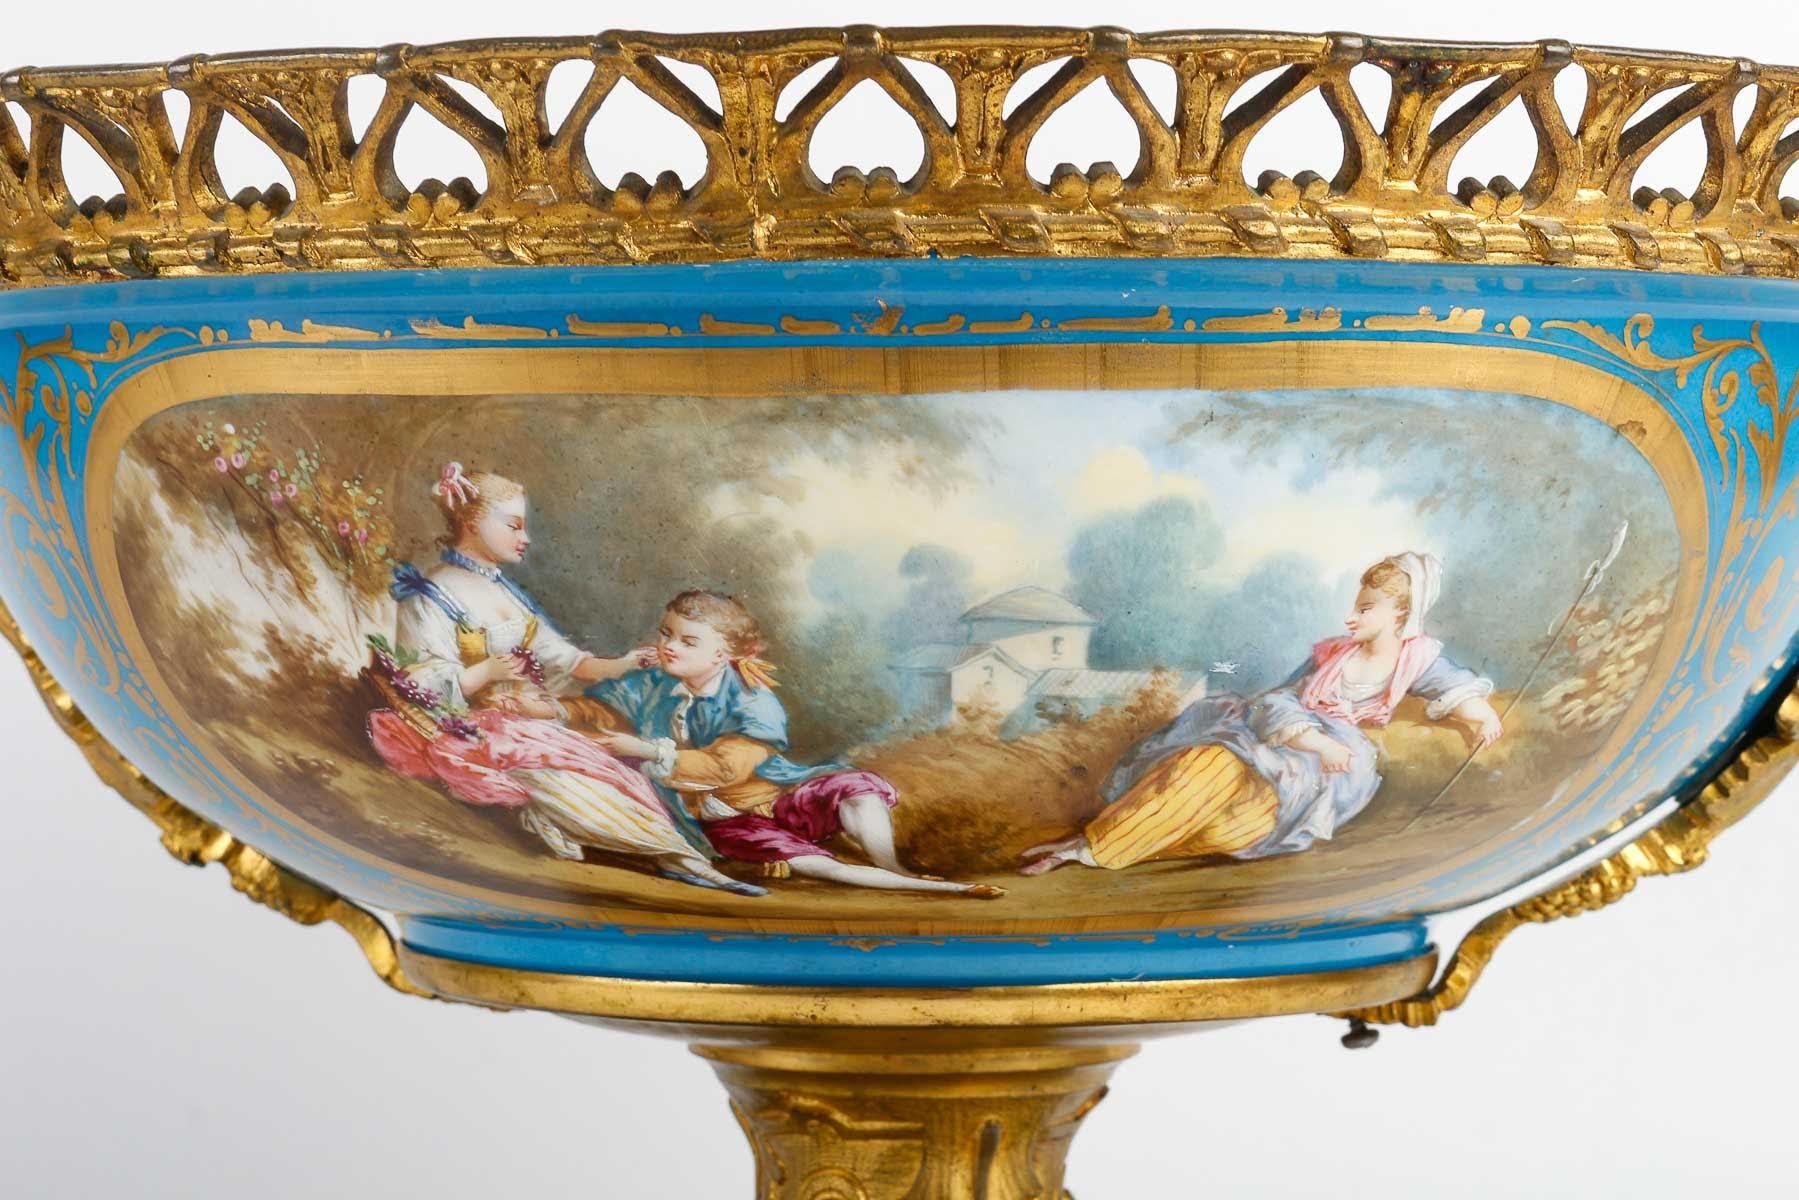 Large 19th century Sèvres porcelain bowl, Napoleon III period.

Large Sèvres porcelain bowl, 19th century, Napoleon III period, gilt bronze mounting, lovely decoration of gallant scenes and flowery interior.  

H: 31.5cm, W: 51cm, D: 39cm